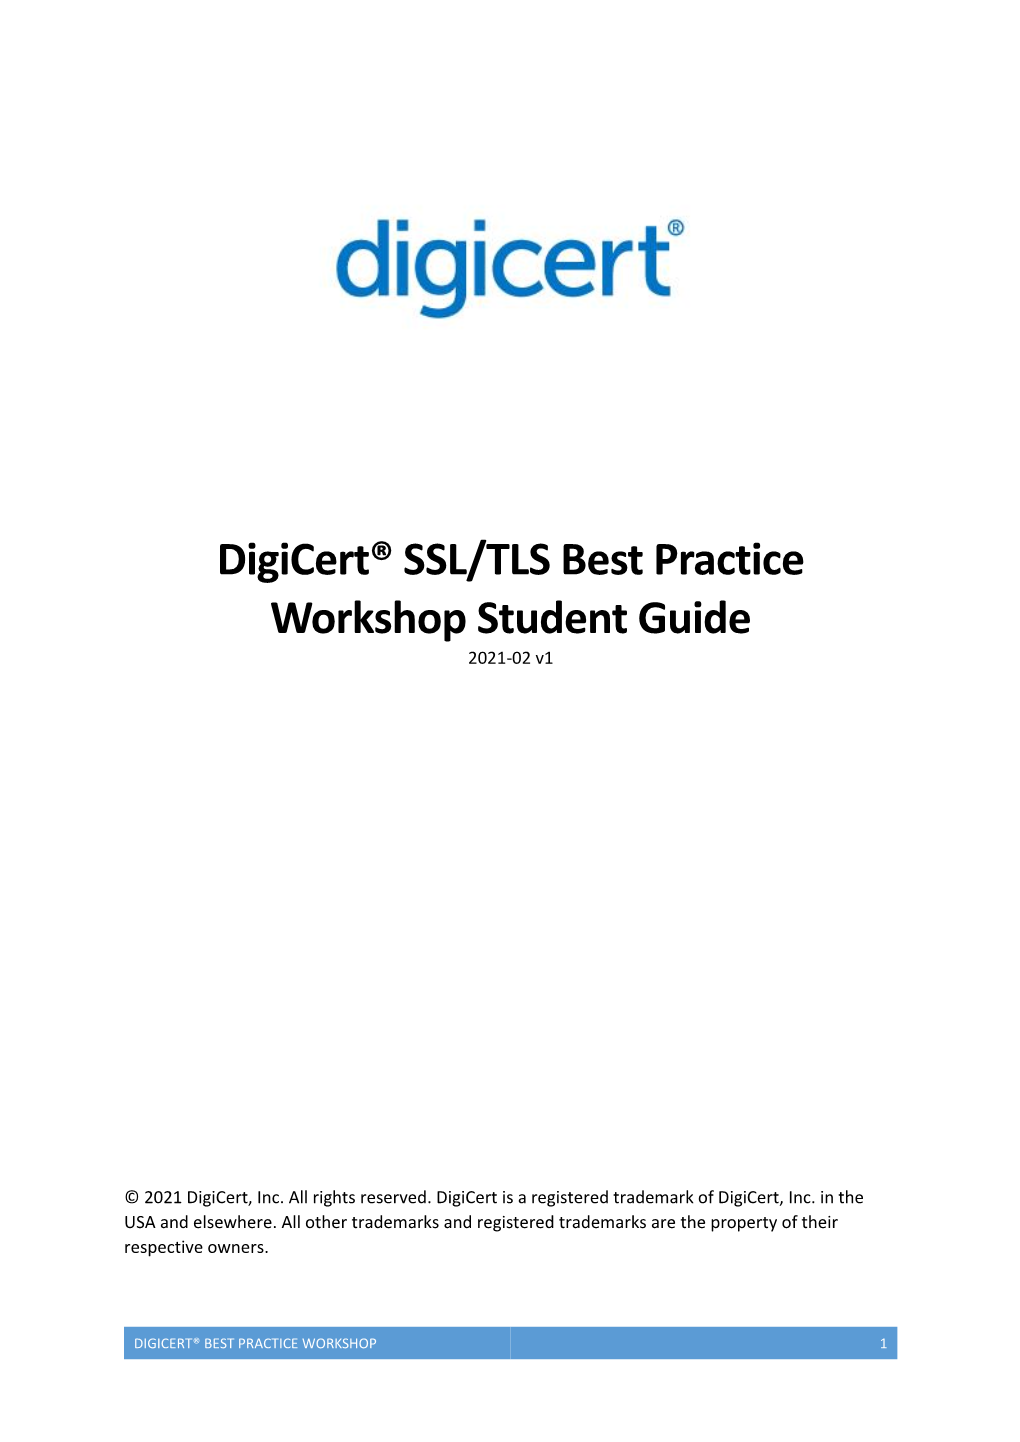 Digicert® SSL/TLS Best Practice Workshop Student Guide 2021-02 V1